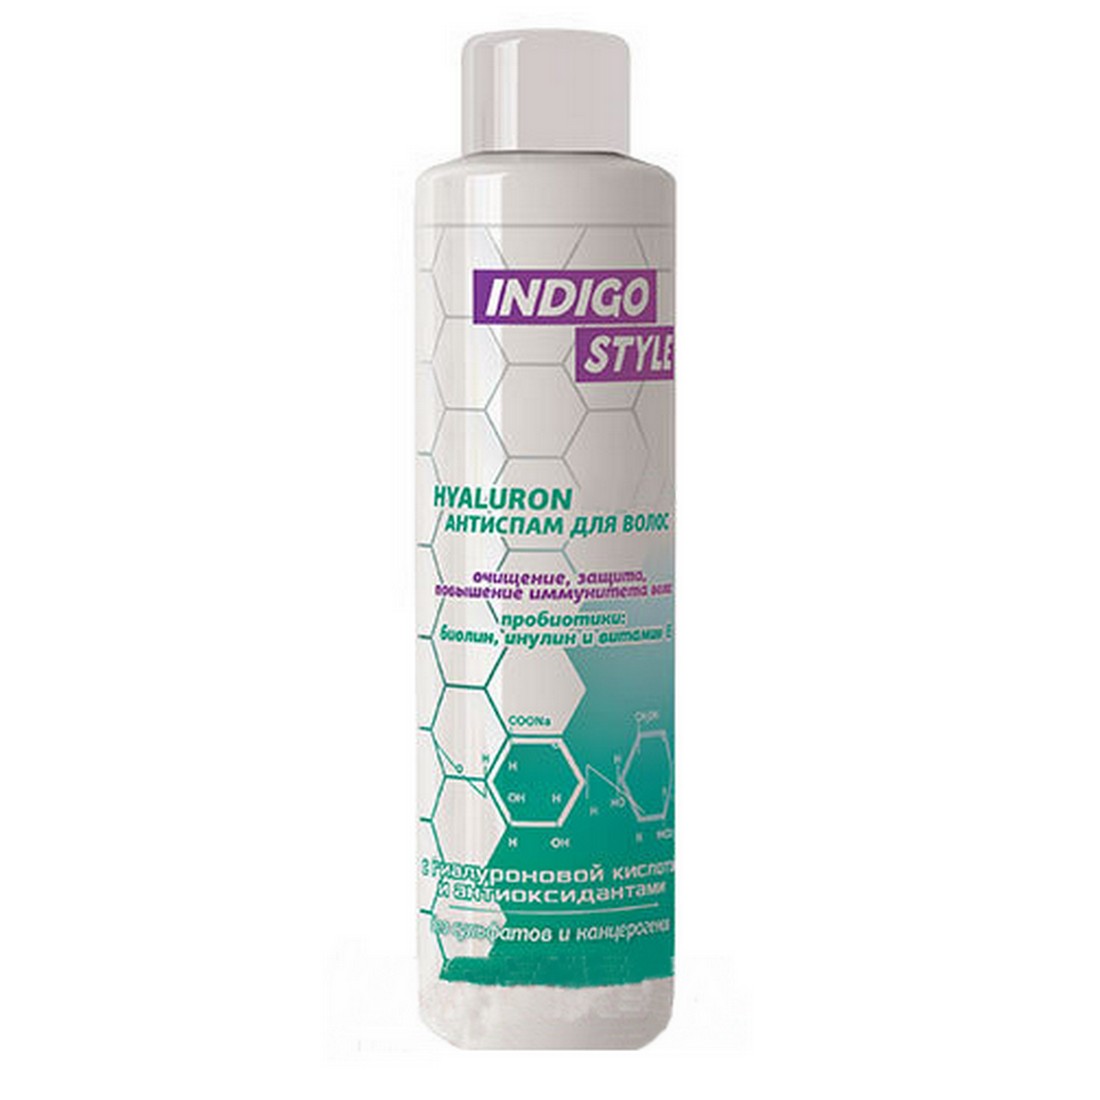 Купить Indigo Бальзам для волос антиспам для глубокого очищения и защиты, 1000 мл, Indigo style